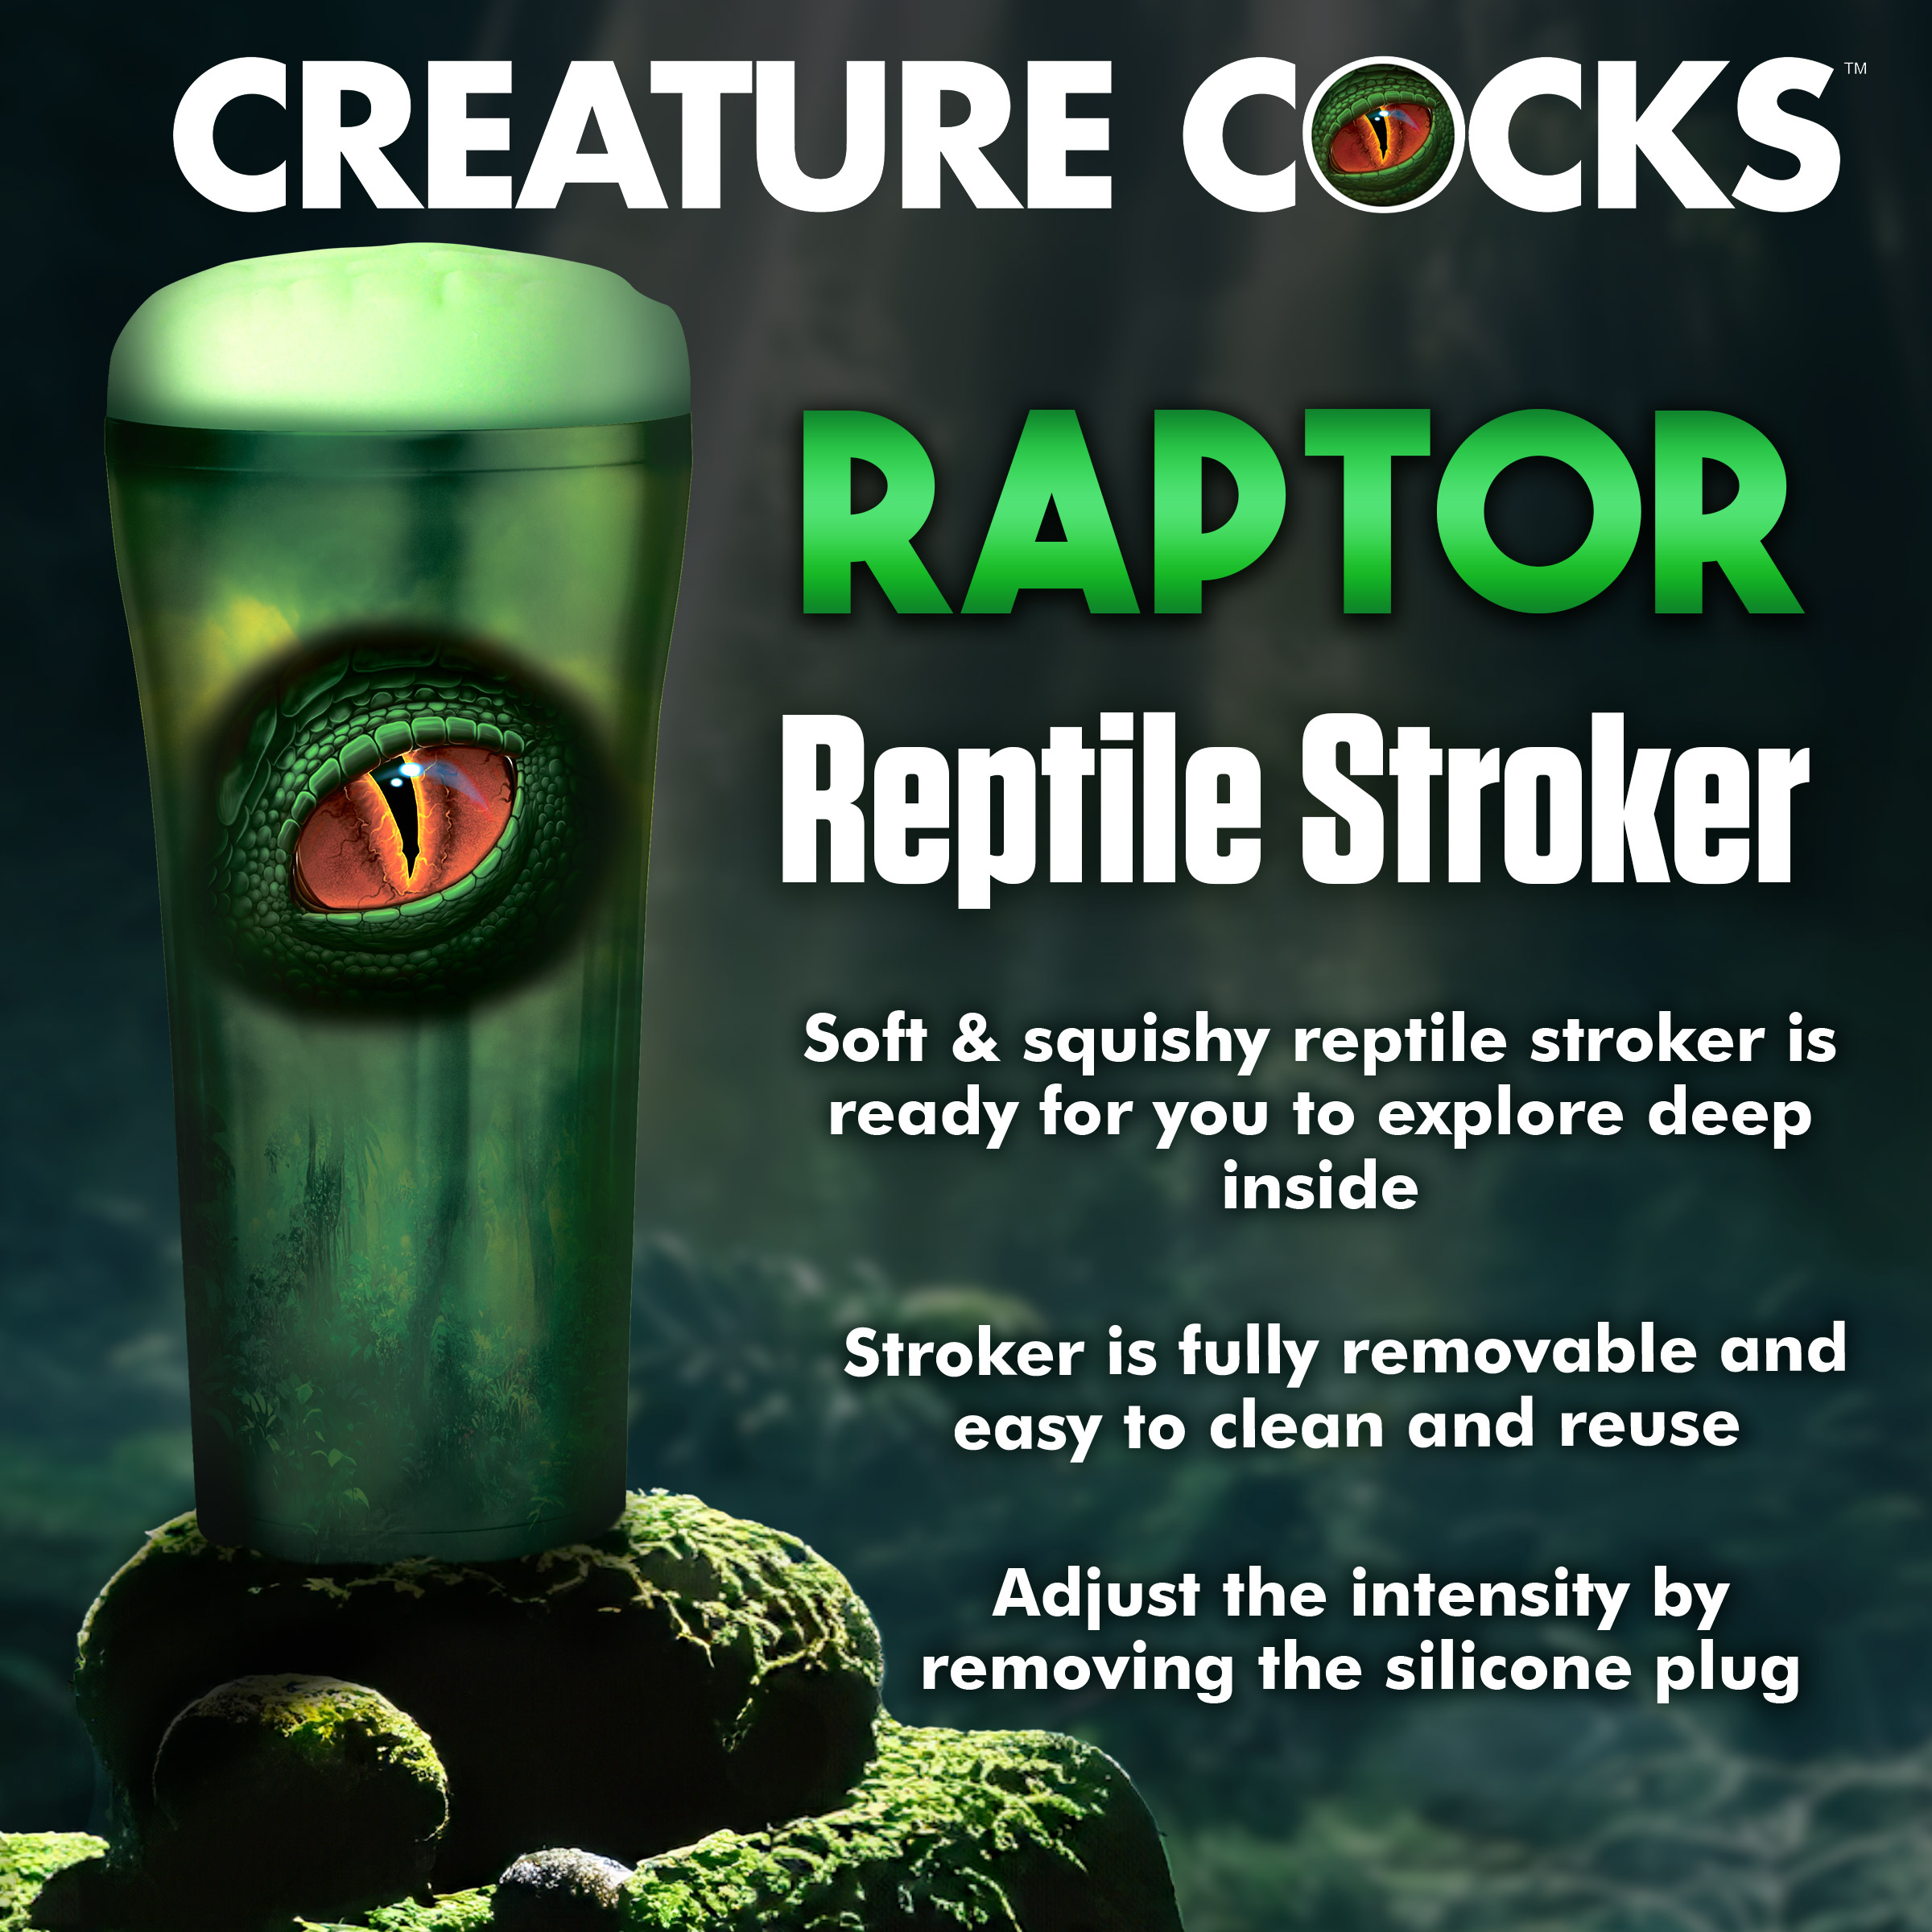 Raptor Reptile Stroker